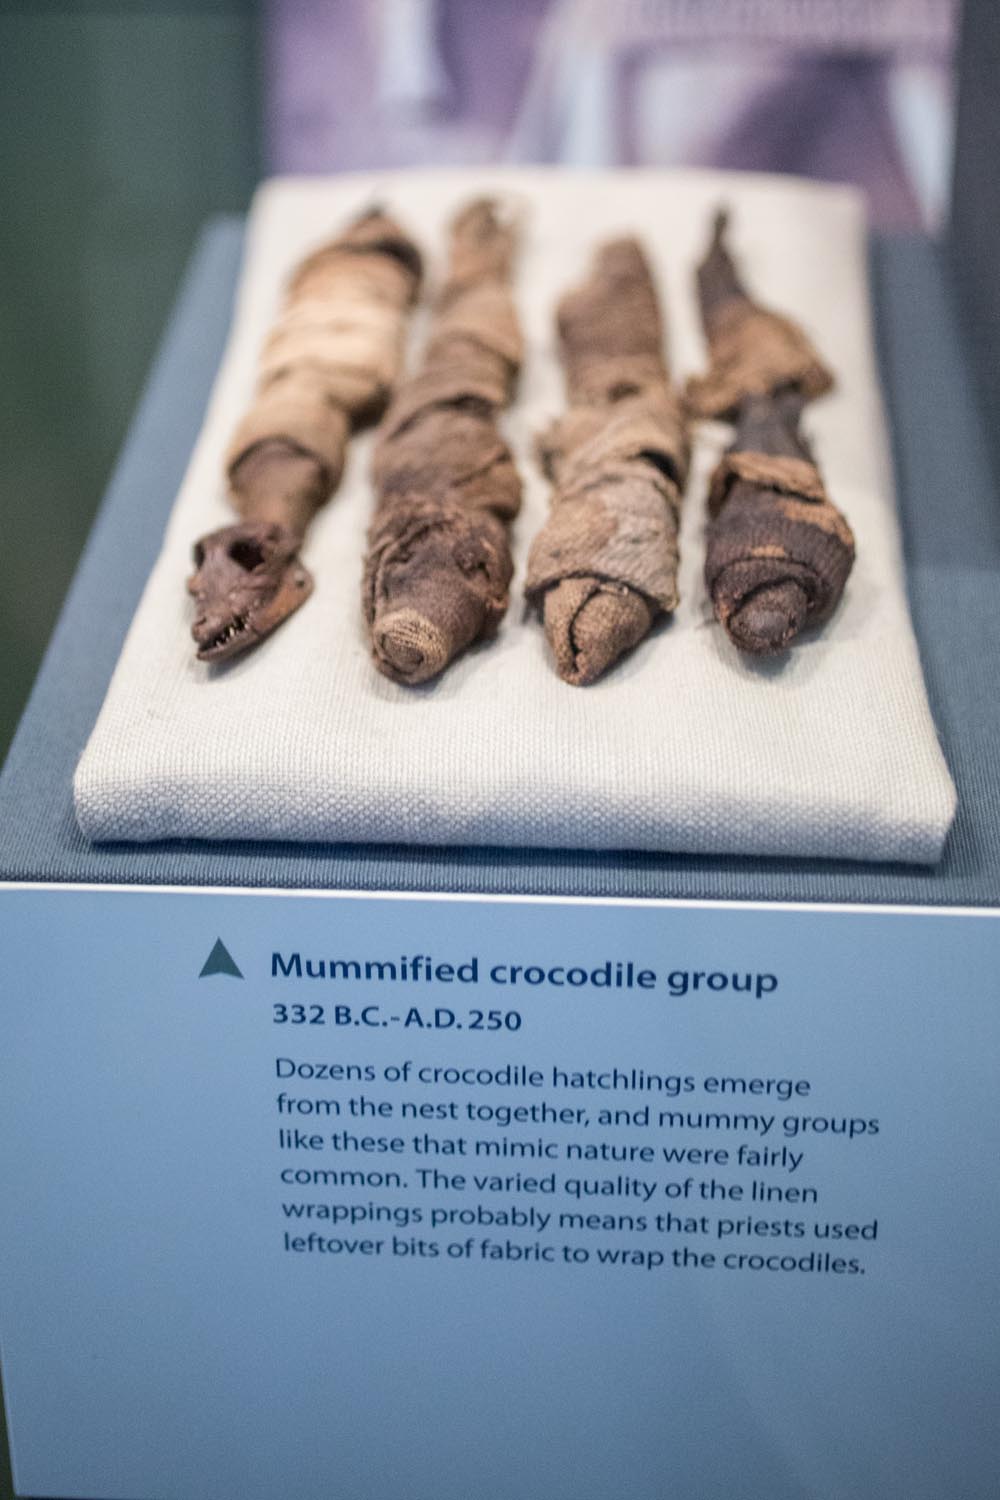 Washington National History Museum Mummified Crocodiles 